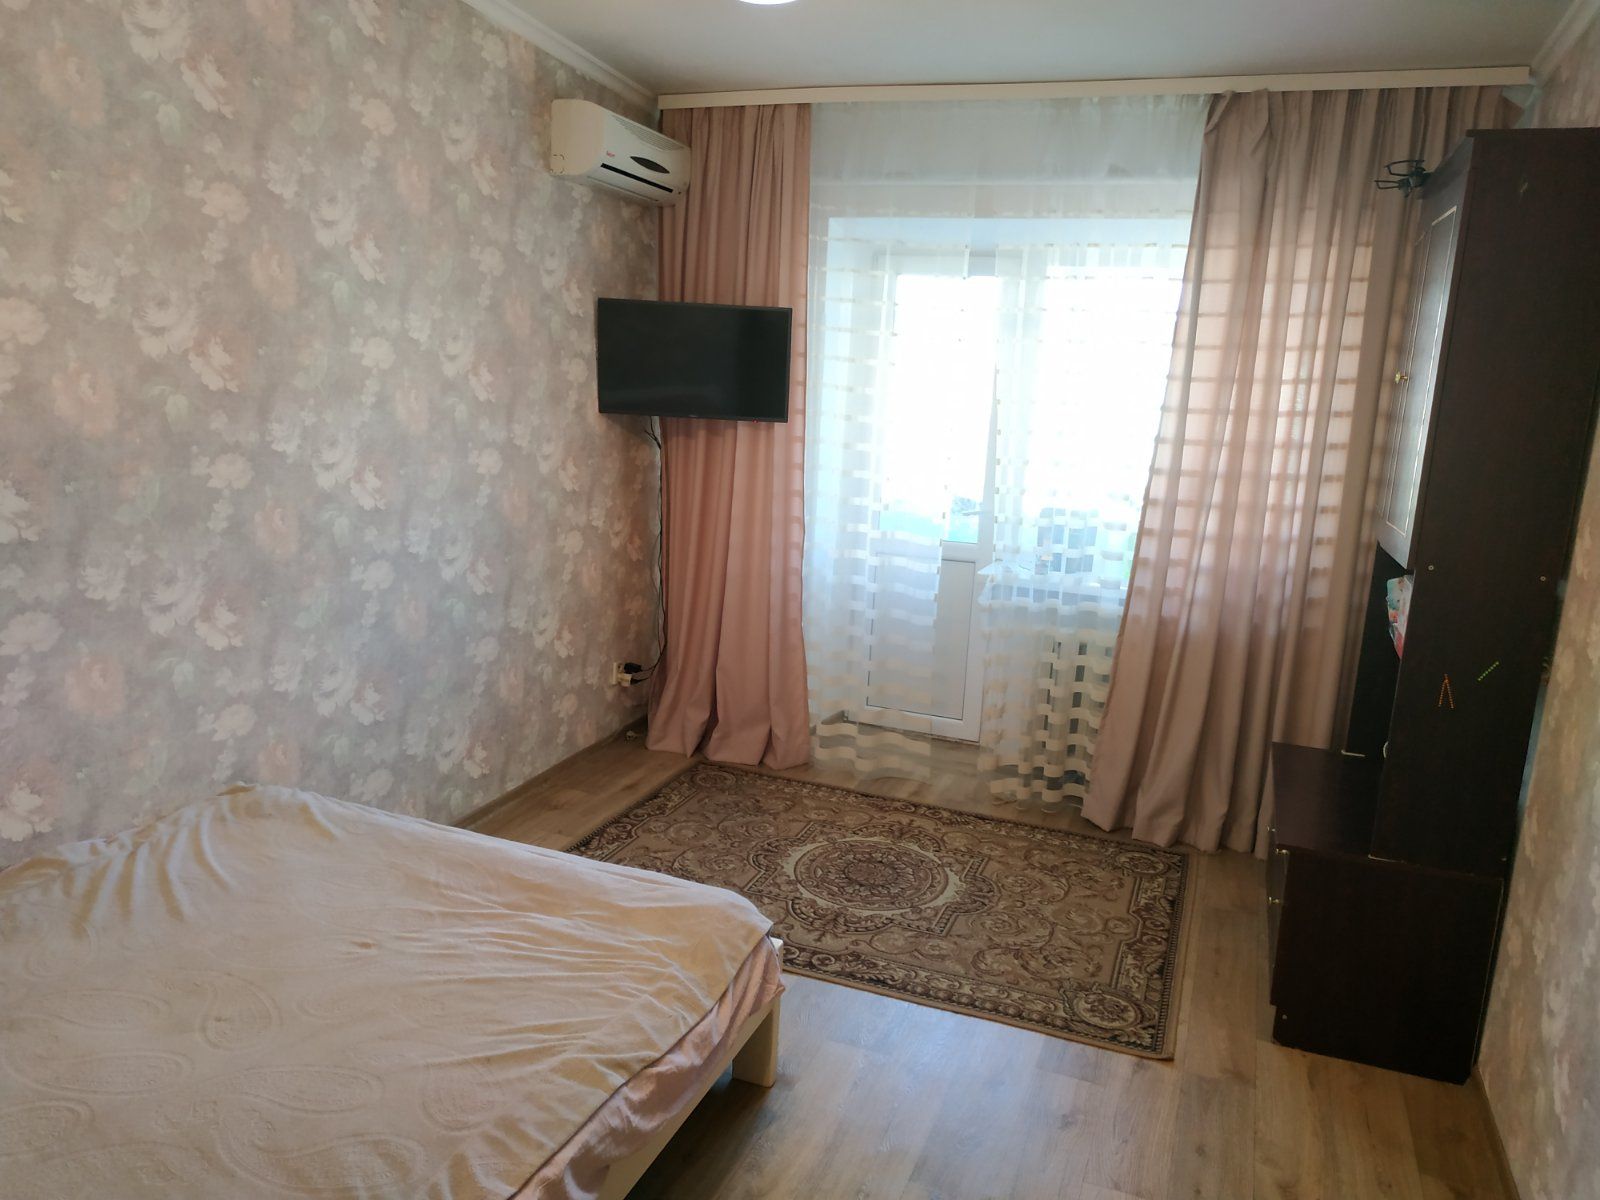 В продаже 2 комнатная квартира по улице Среднефонтанской ID 41769 (Фото 2)